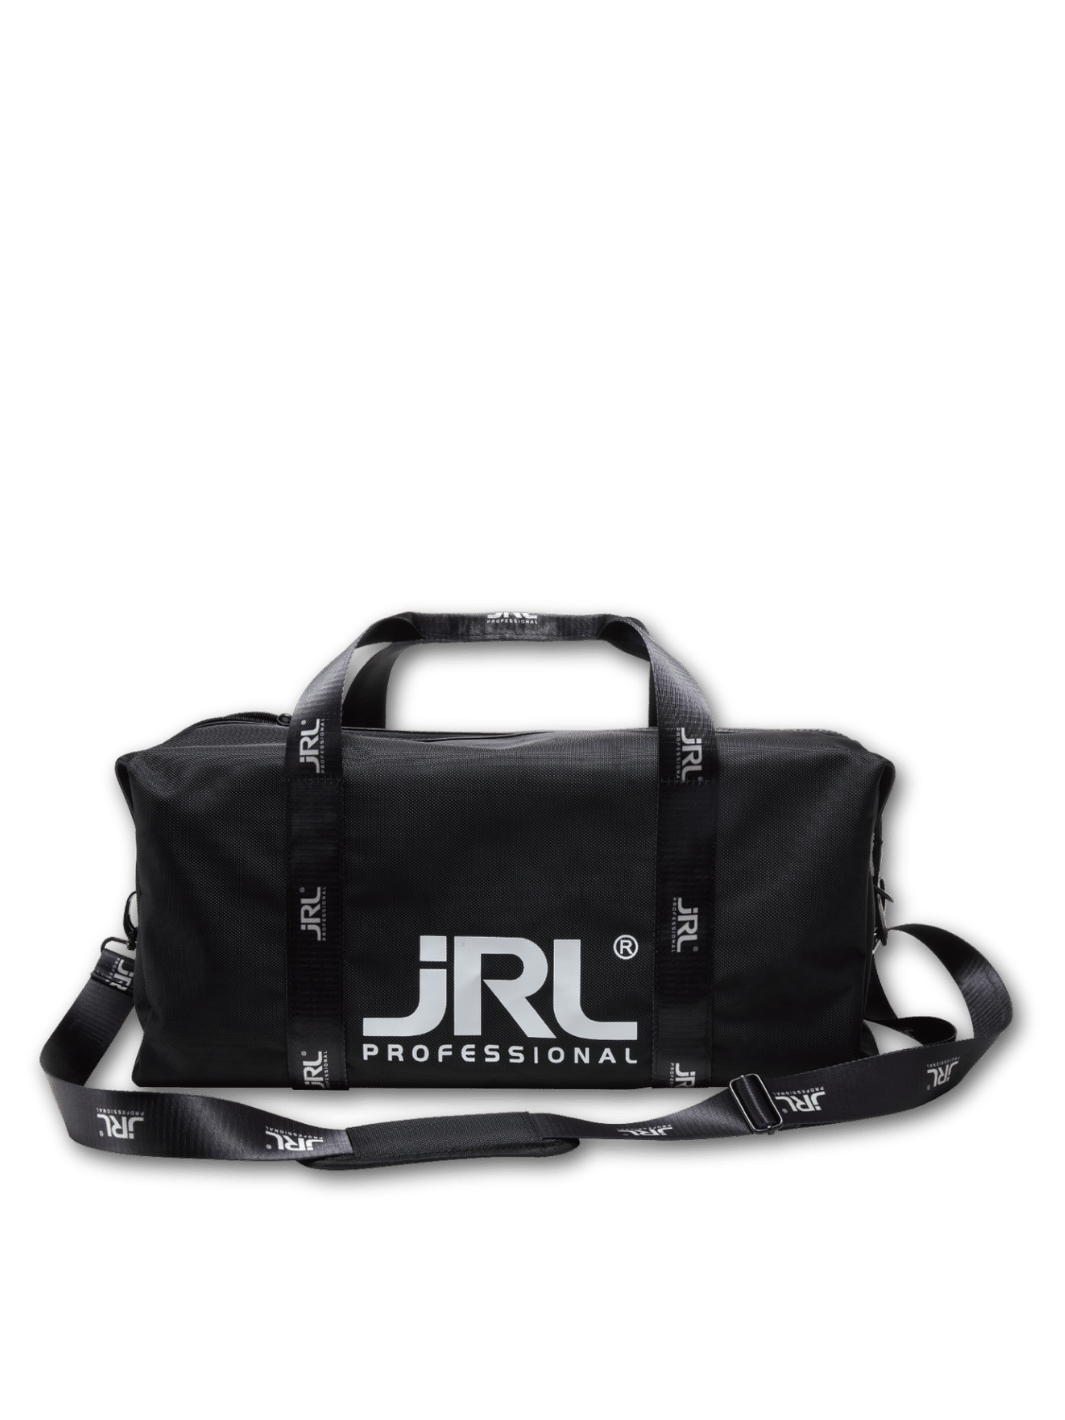 Schwarze JRL Reisetasche mit abnehmbarem Tragegurt und Außentaschen, erhältlich bei Phullcutz.